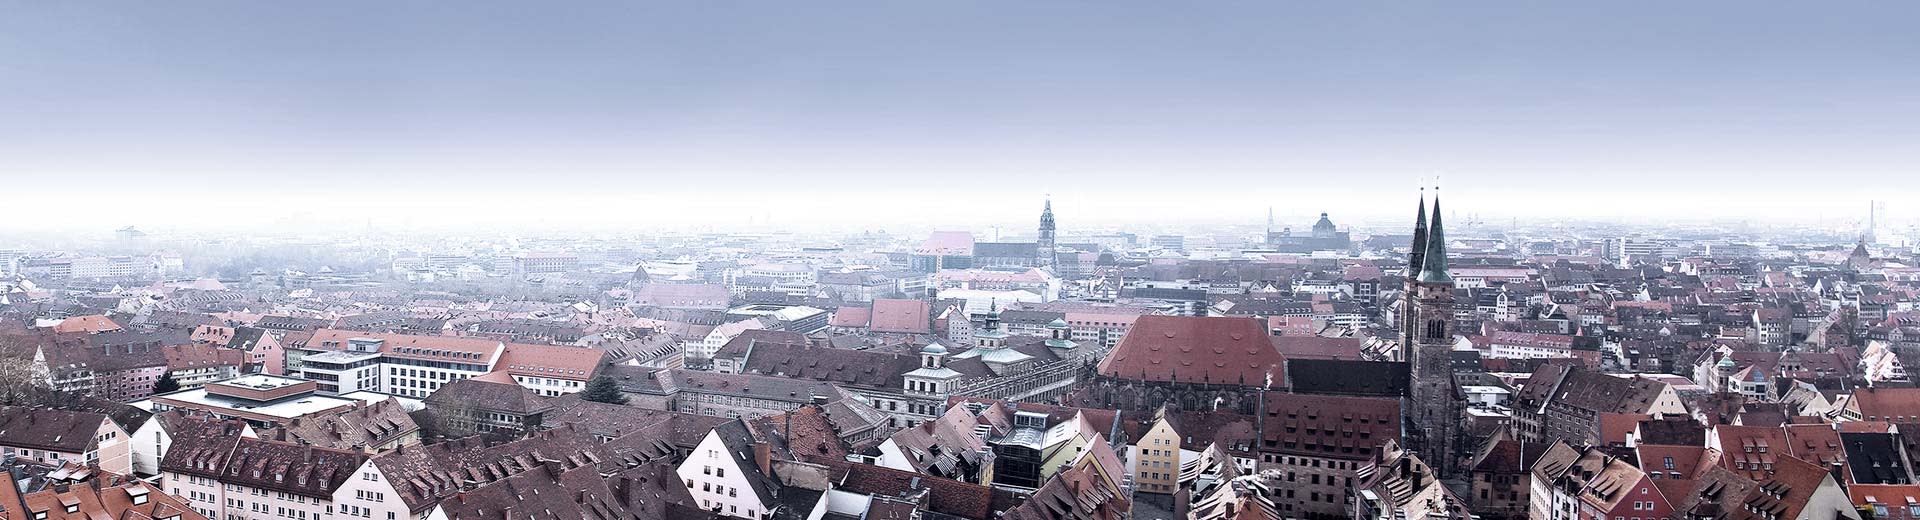 Les toits rouges et les steeple de l'église de Nuremberg historique.